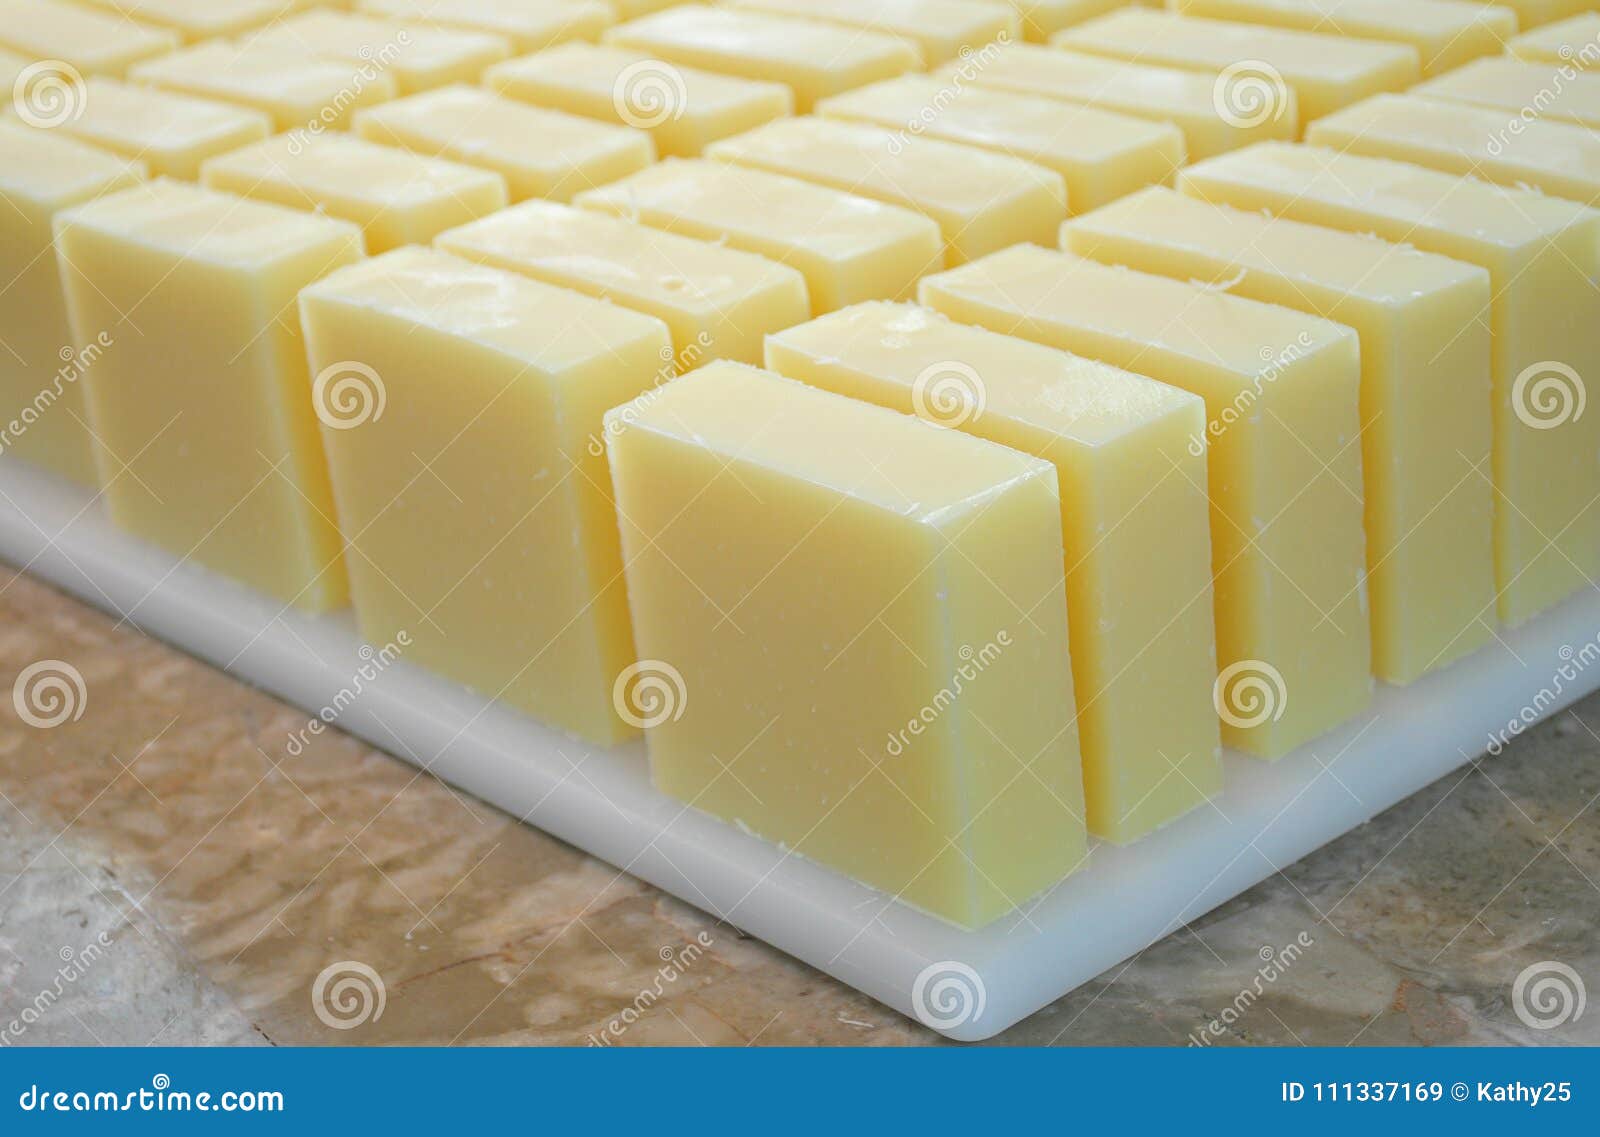 bulk batch handmade soap bars